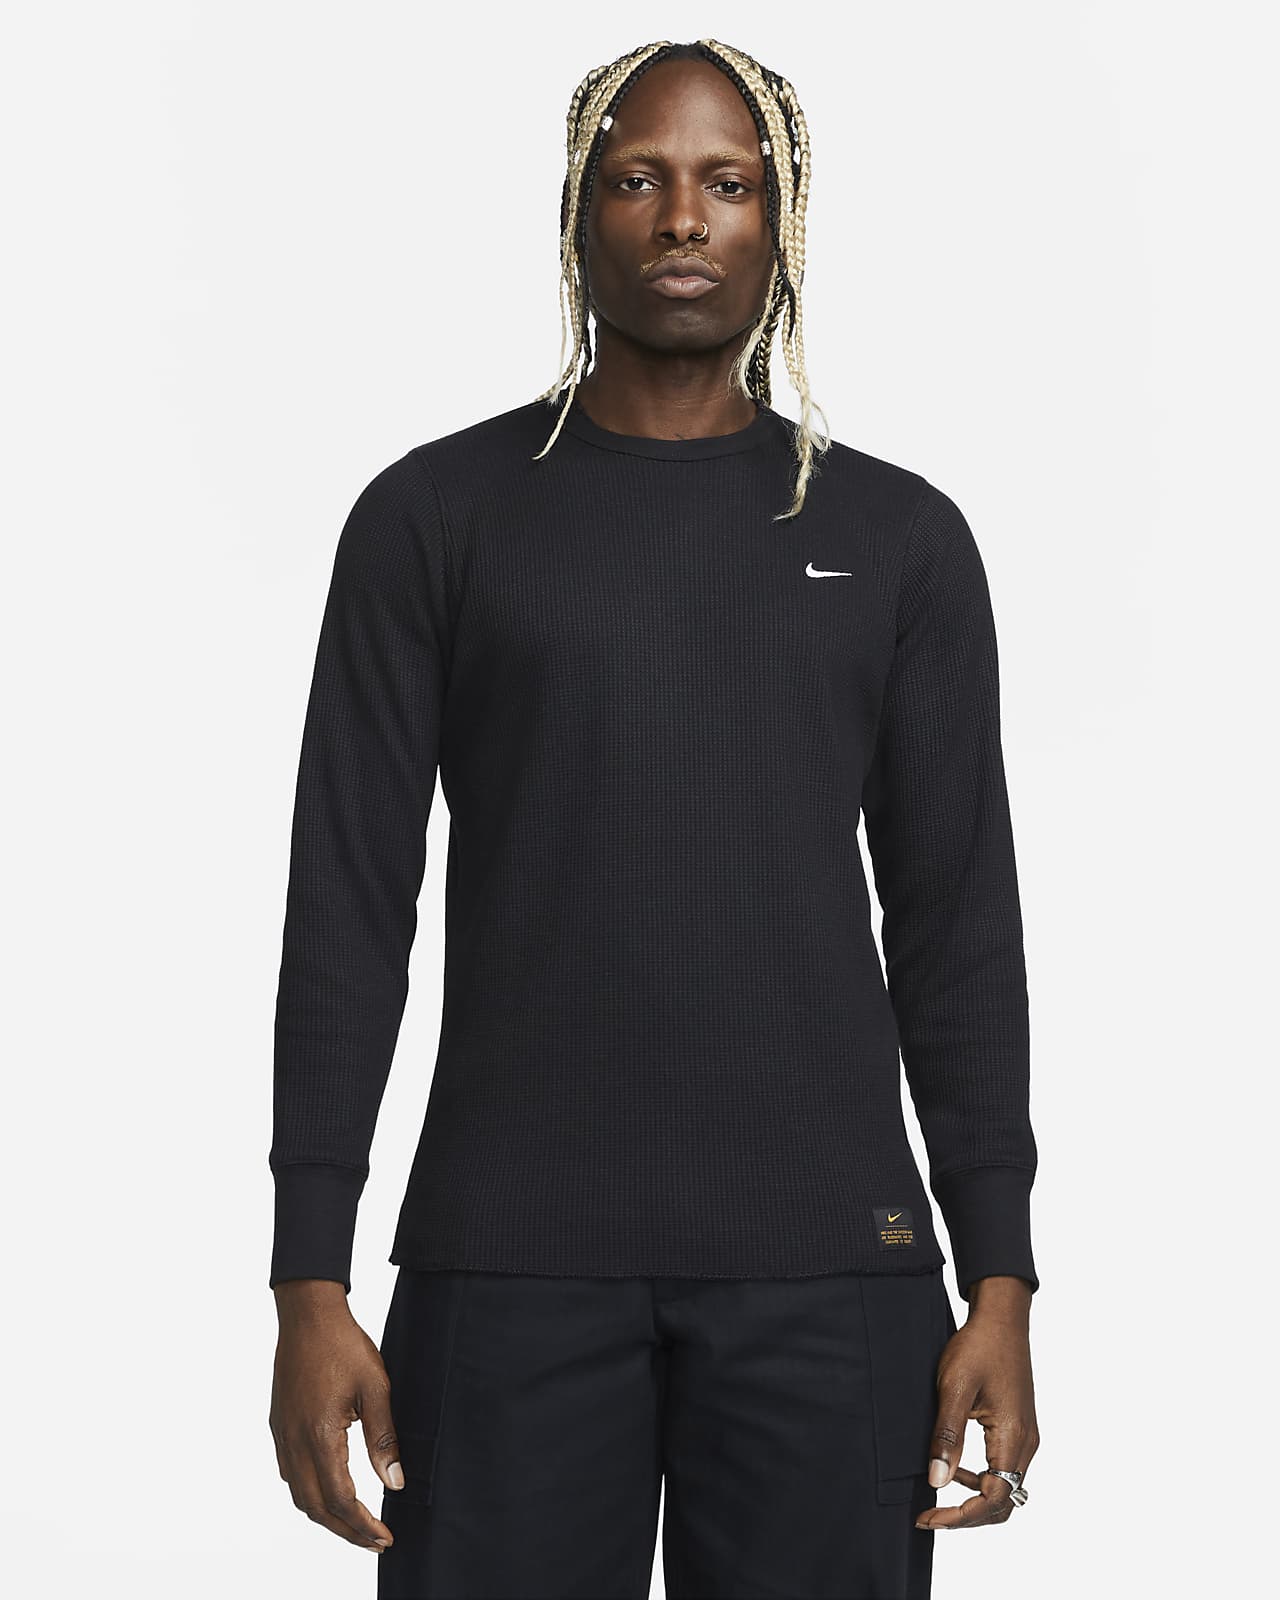 Nike Life Camiseta de manga larga y alta densidad con diseño tipo gofre - Hombre